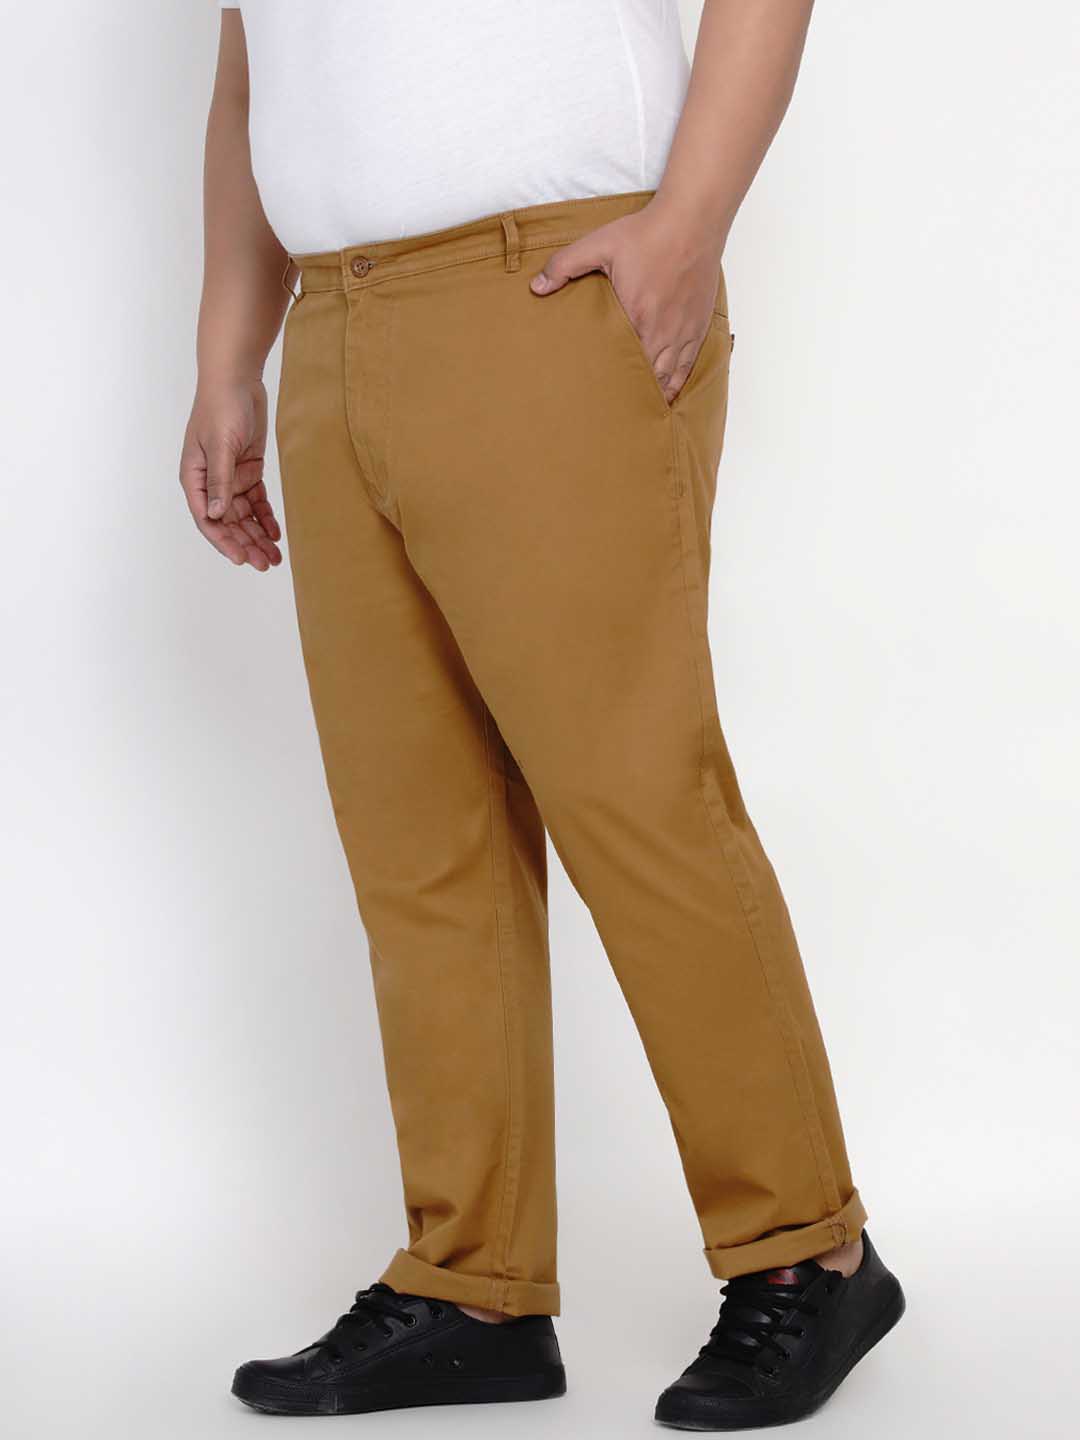 bottomwear/trousers/JPTR2195B/jptr2195b-3.jpg